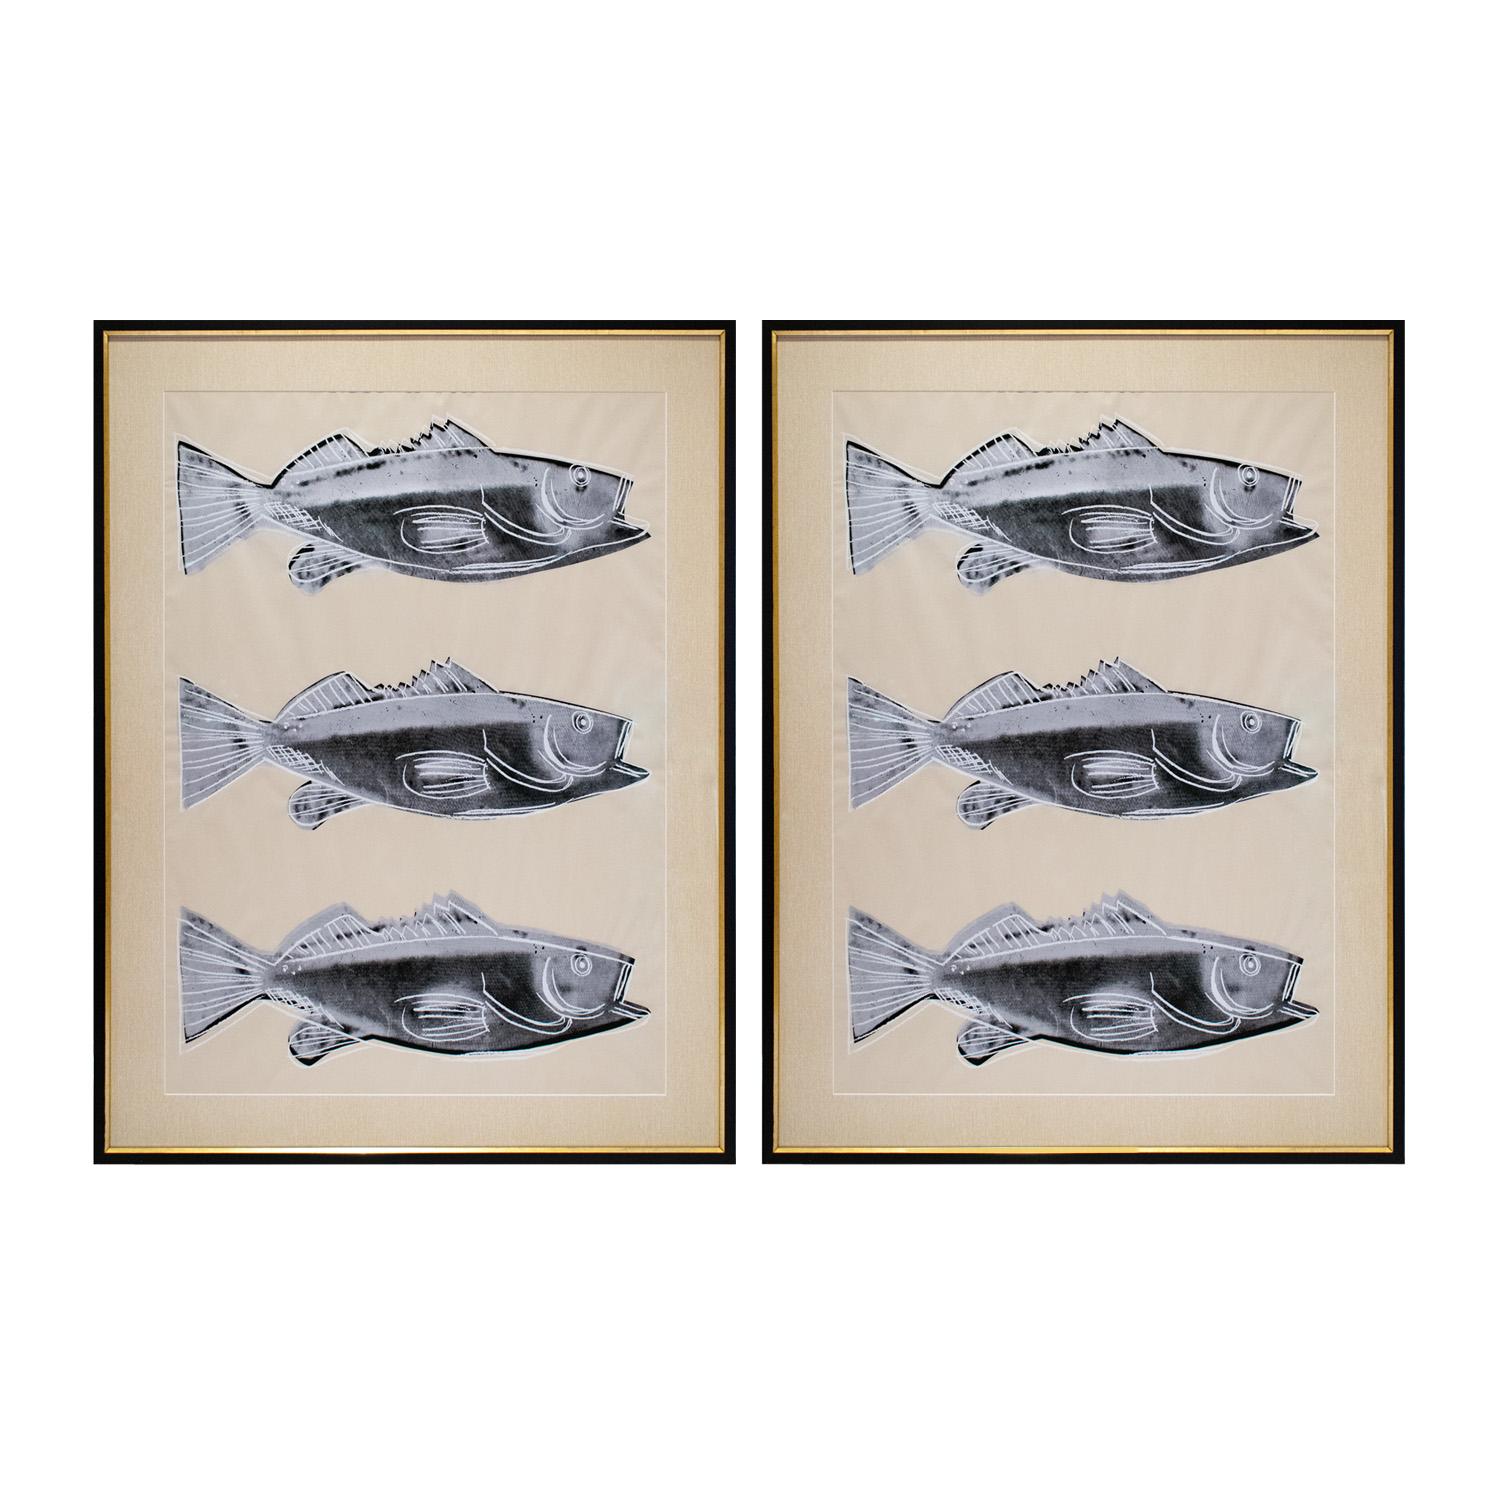 Zwei gerahmte, farbige Siebdrucke (F. & S. IIIA.39) auf Tapete mit vollen Rändern von Andy Warhol, Amerikaner 1983.  Diese wurden von Lobel Modern als zusammengehöriges Paar individuell gerahmt.  Auf der Rückseite befindet sich ein Fenster, in dem